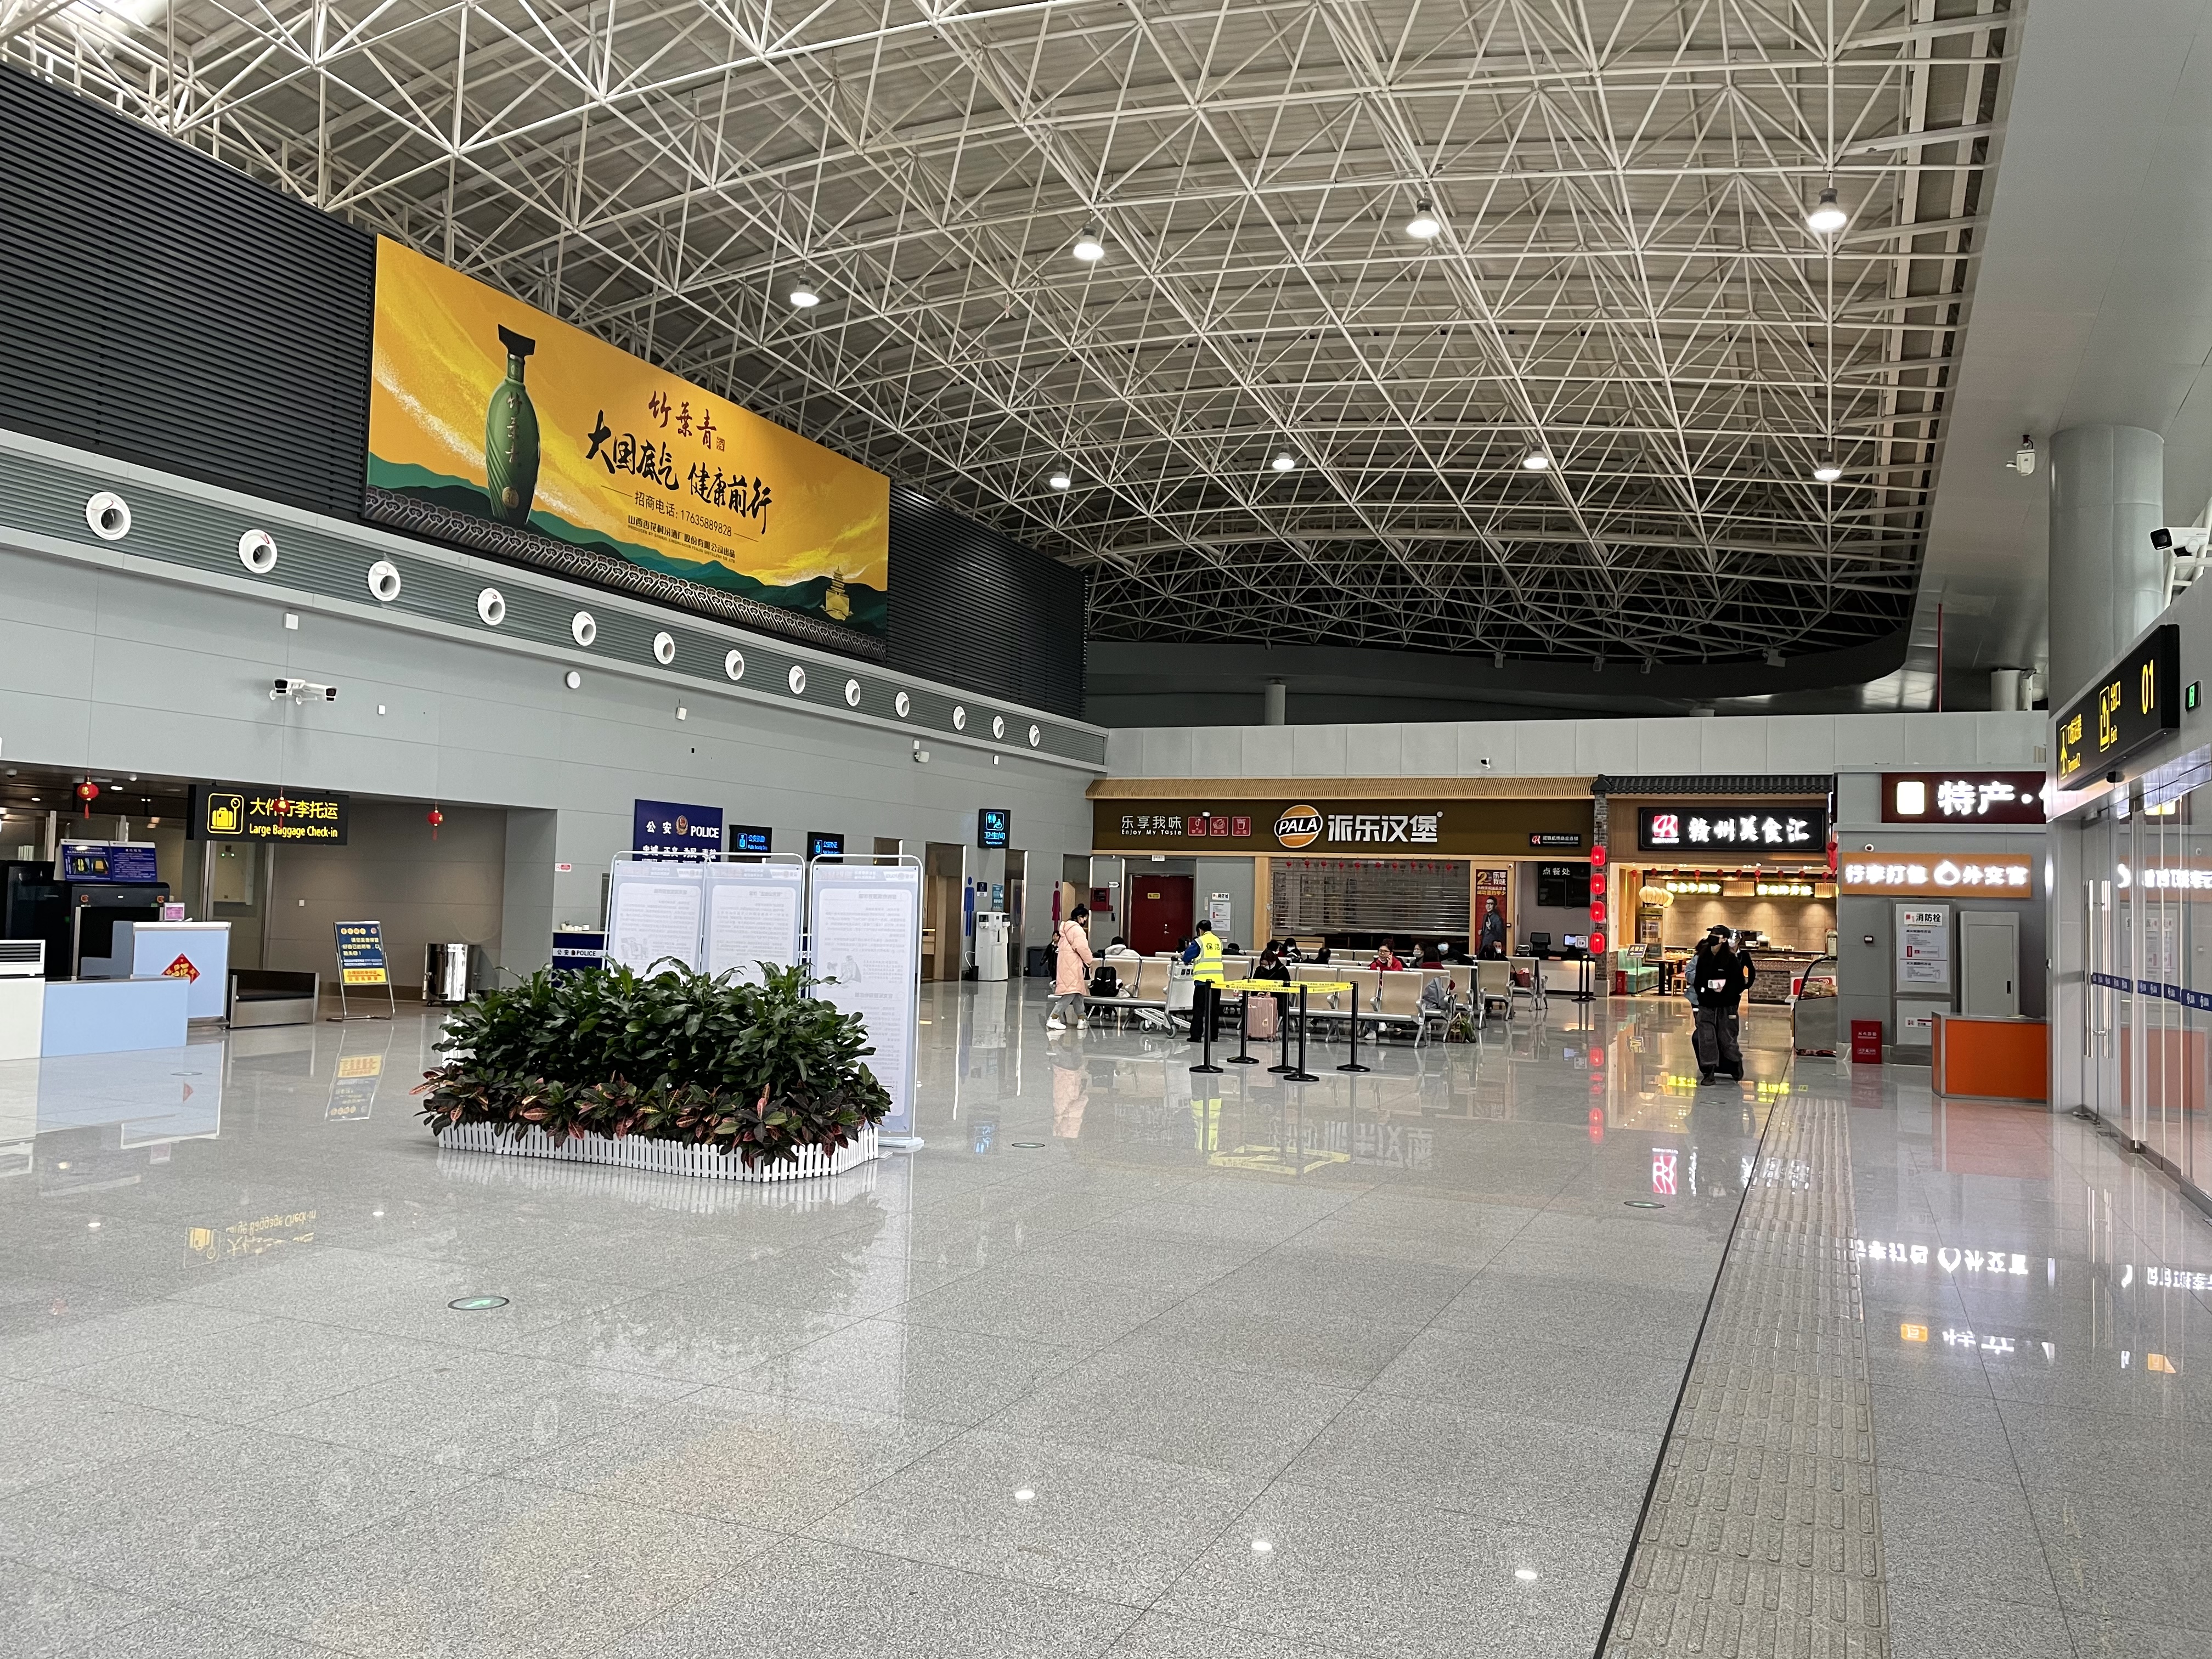 名字高大上的小众机场-赣州黄金国际机场t2航站及其机场贵宾室一览